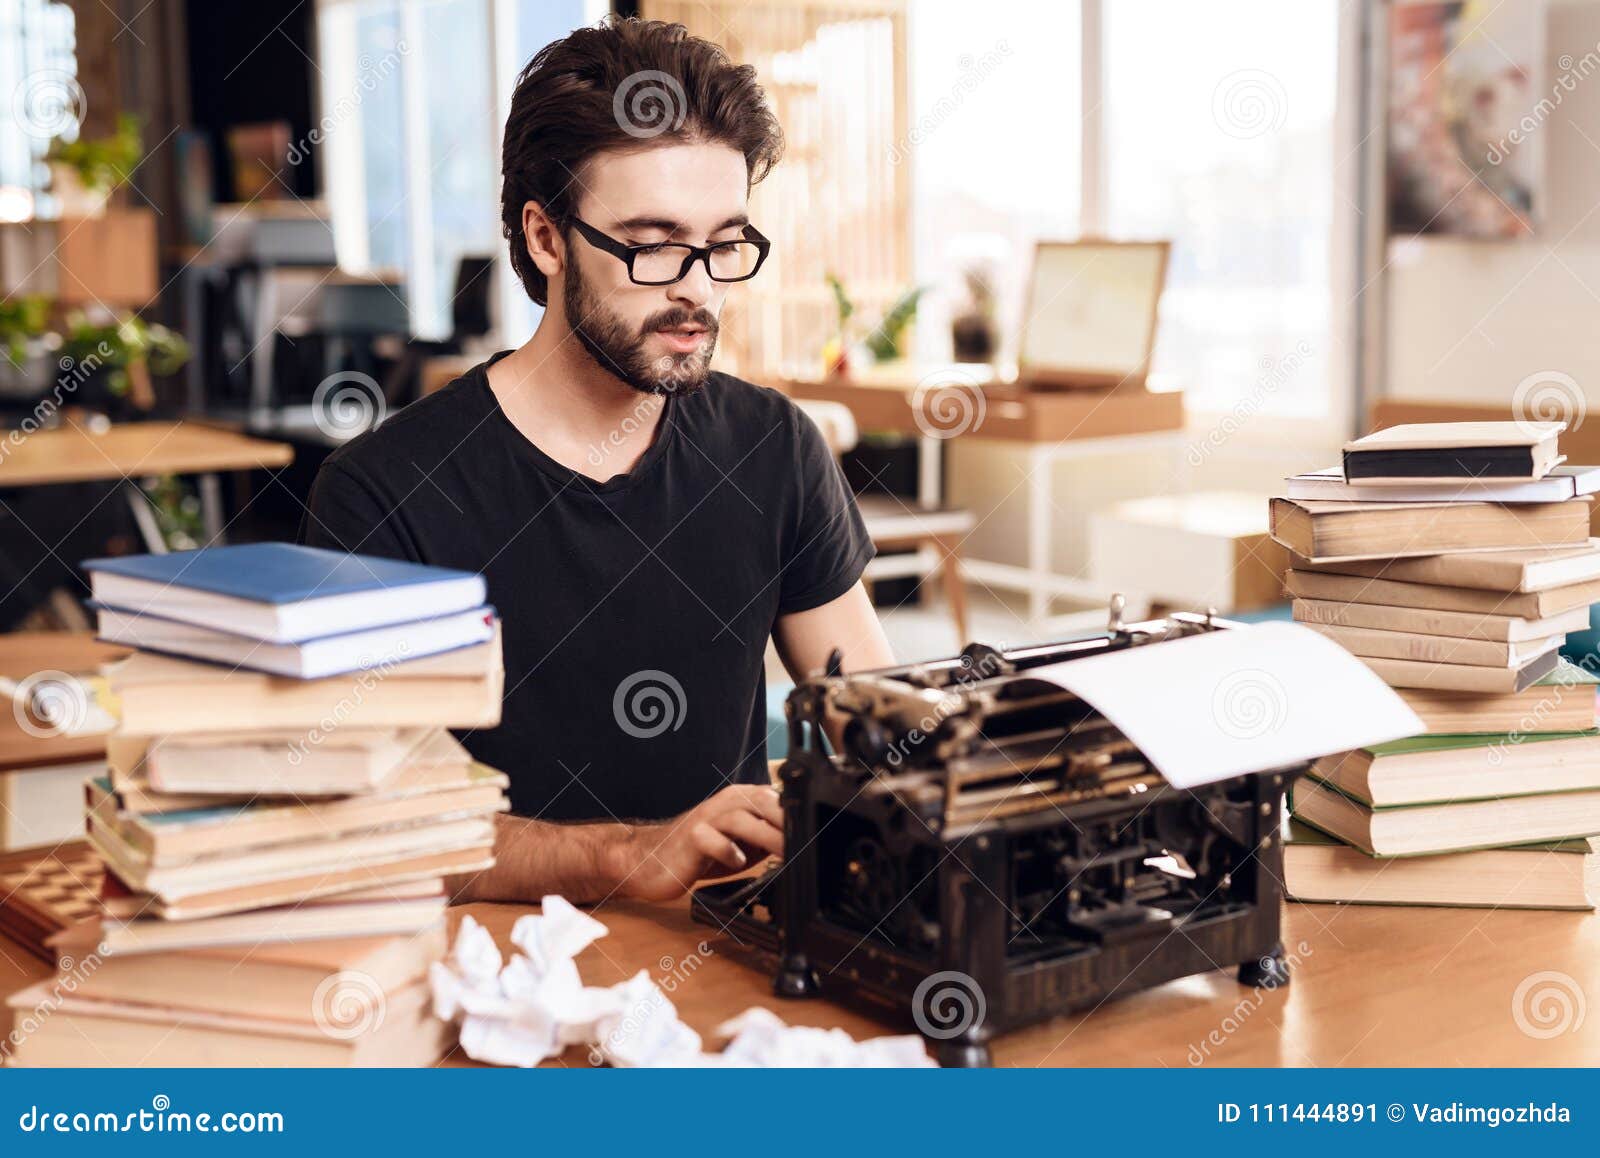 Со сценарист. Человек за печатной машинкой. Мужчина писатель. Писатель за работой. Писатель за печатной машинкой.